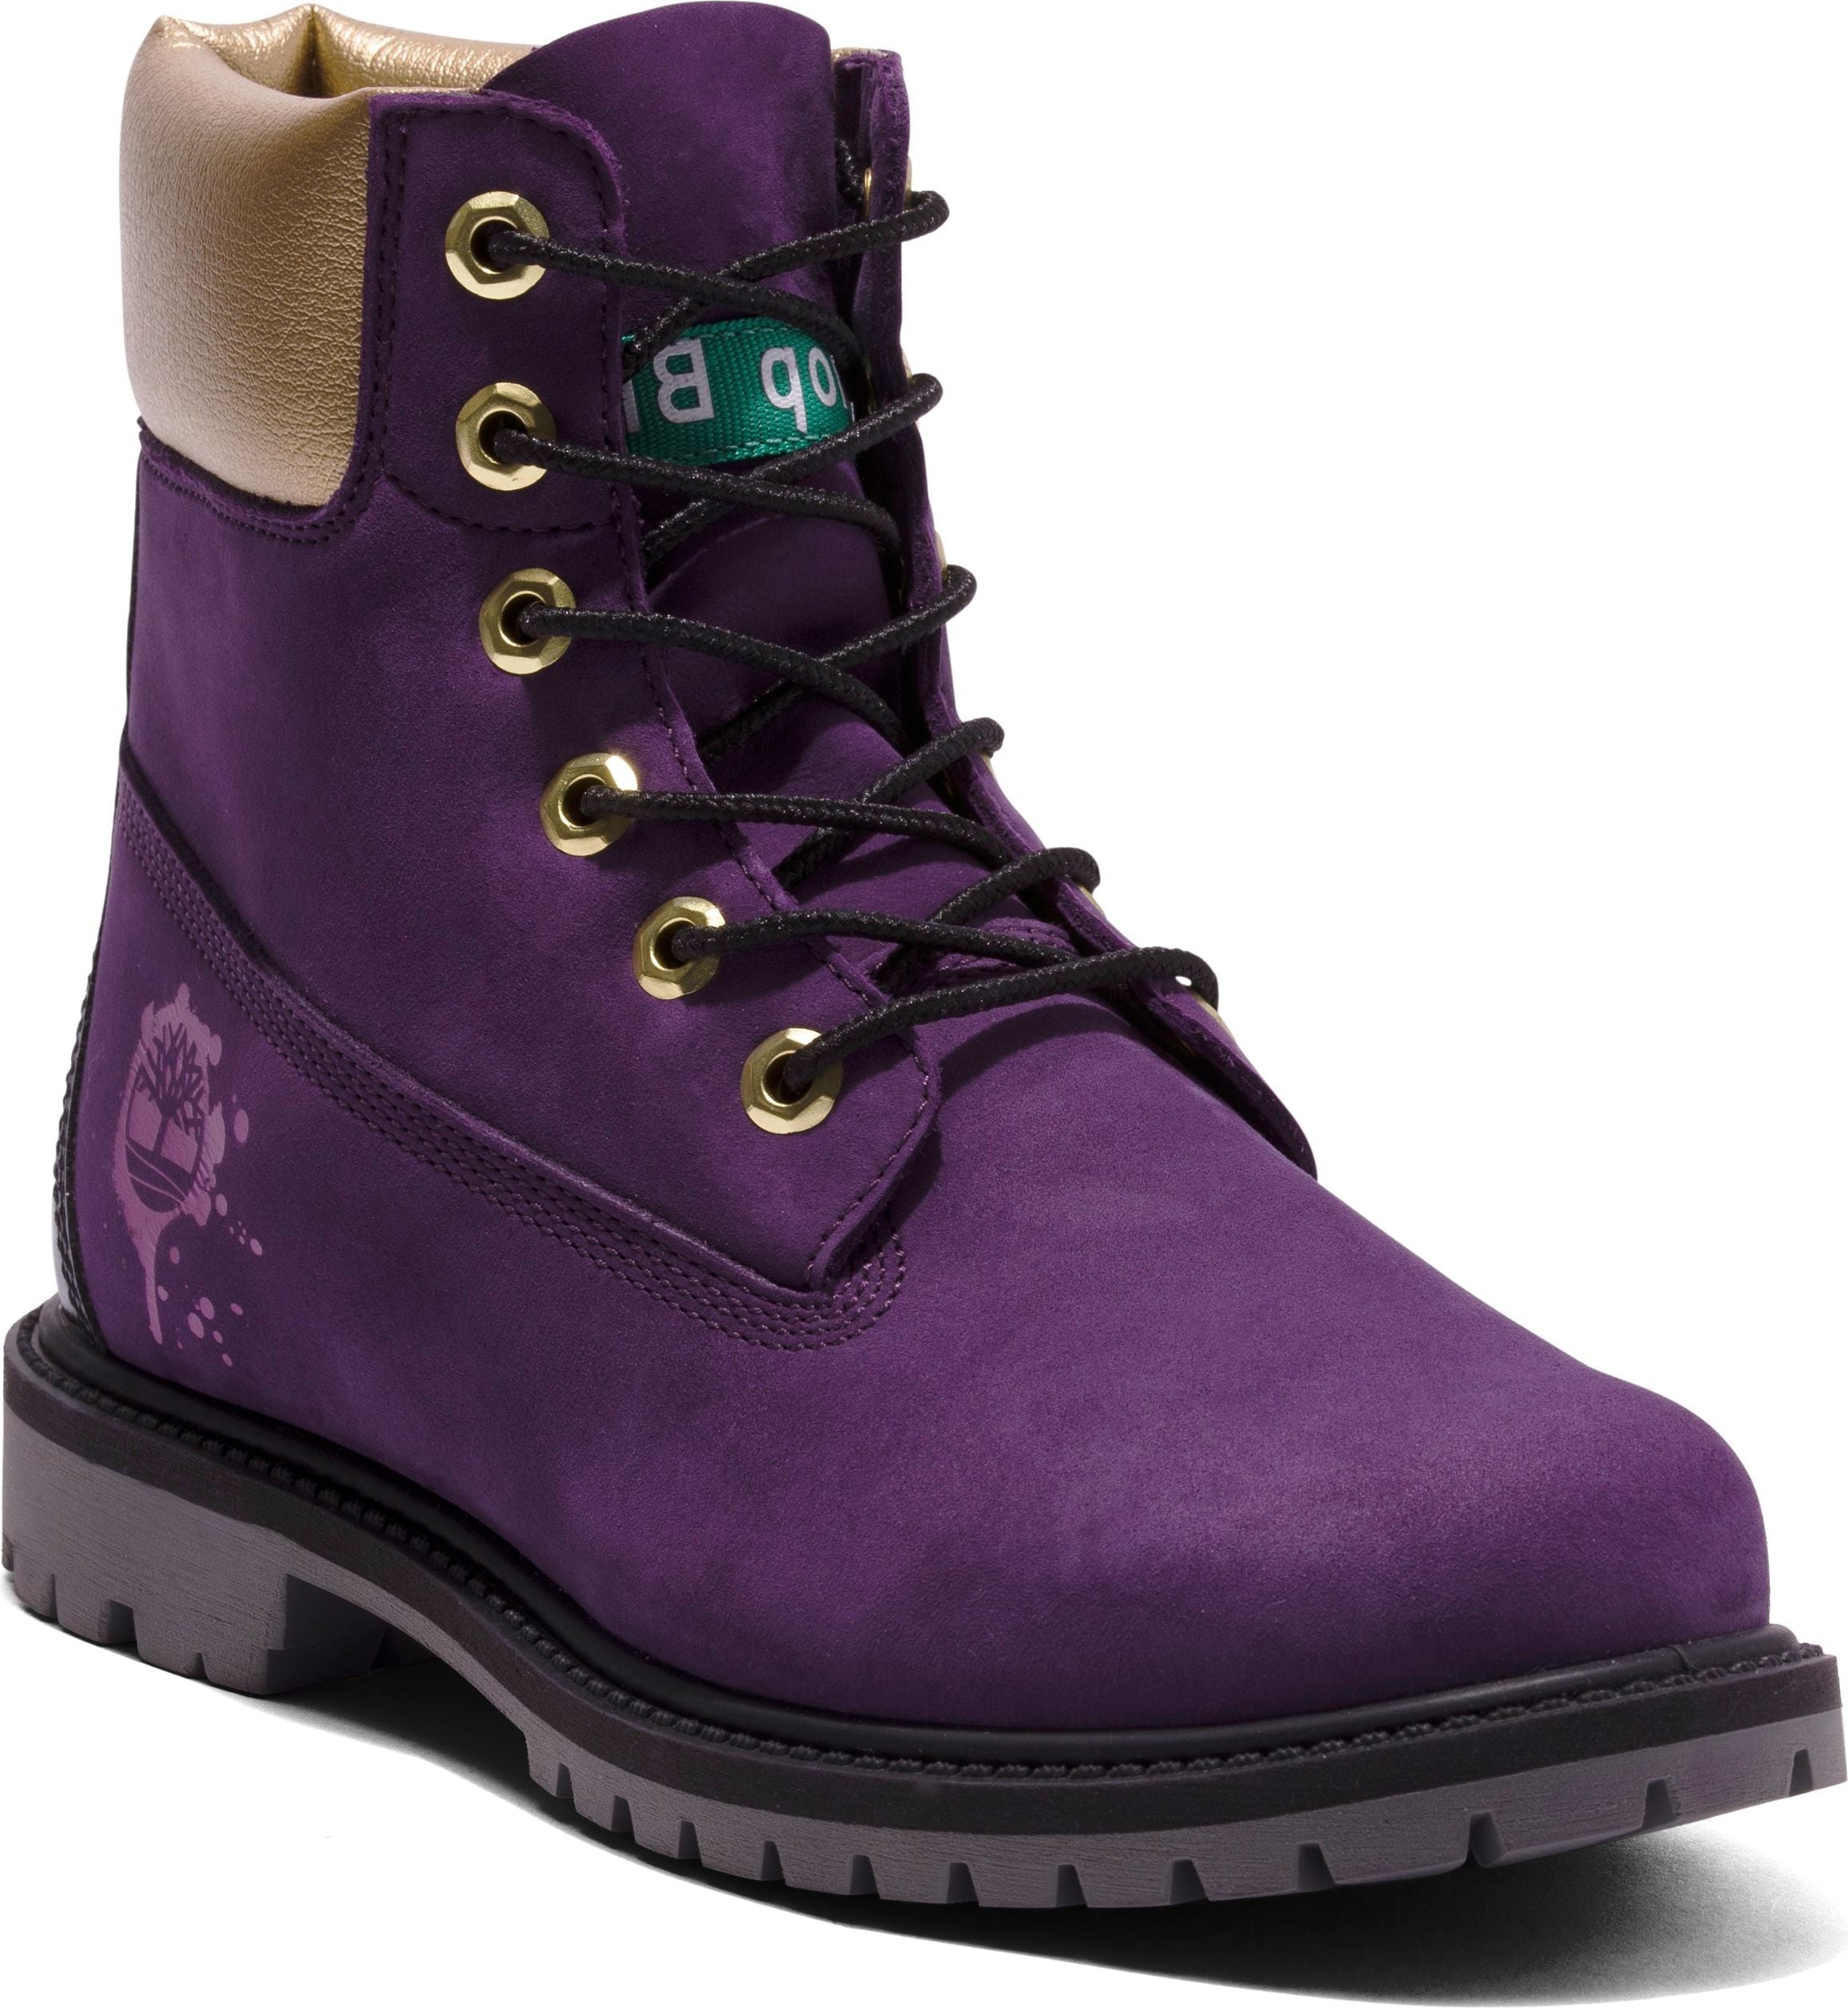 6inch Waterproof Boot Purple